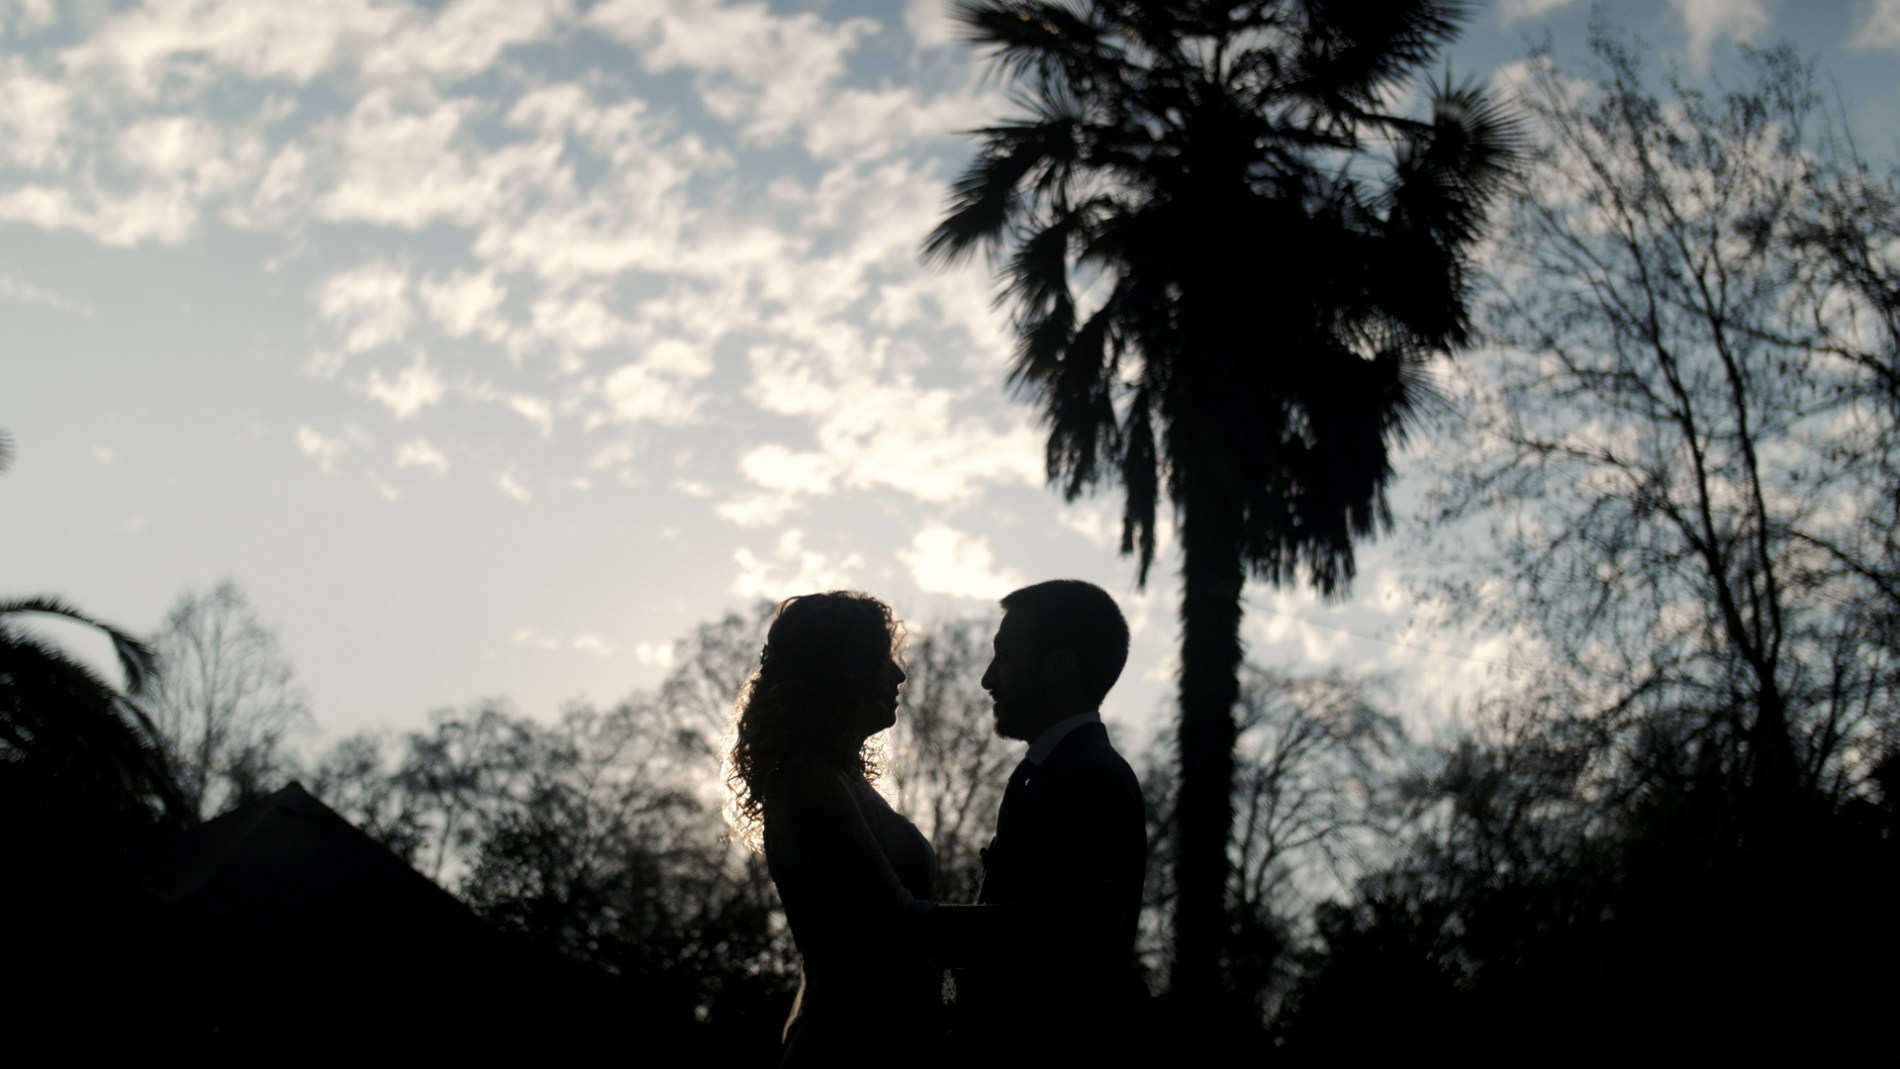 Fran & Massimo - Matrimonio en Casona Parque Nos - Video de matrimonio por Ampersand Wedding Films